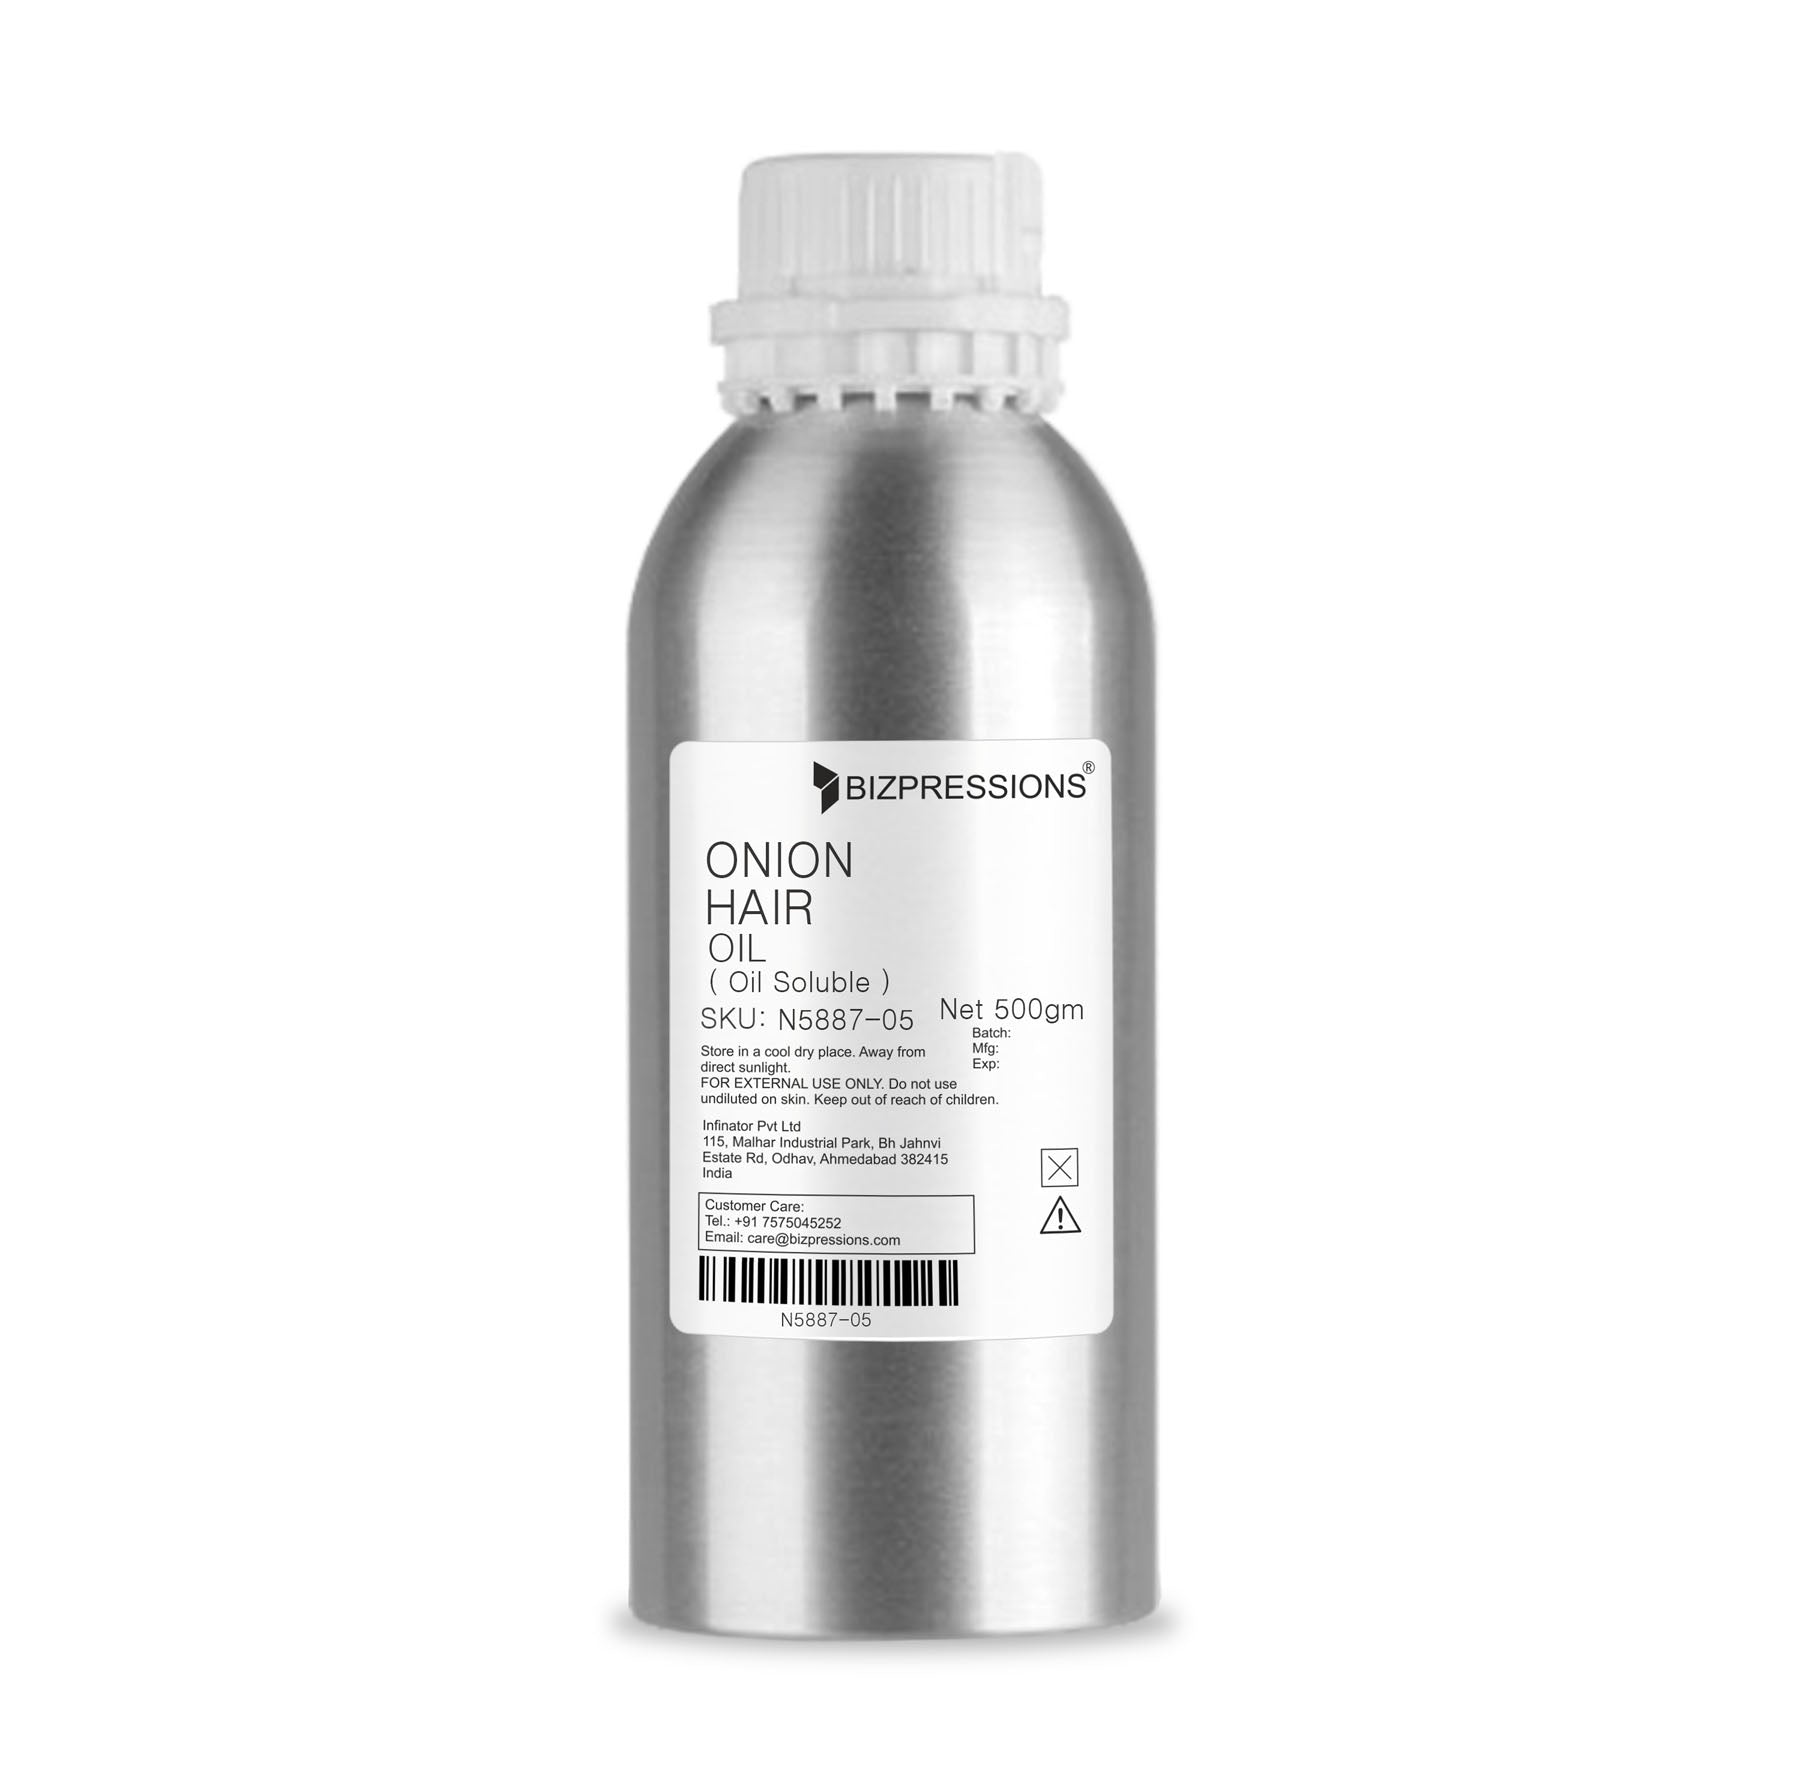 ONION HAIR OIL - Fragrance ( Oil Soluble ) - 500 gm